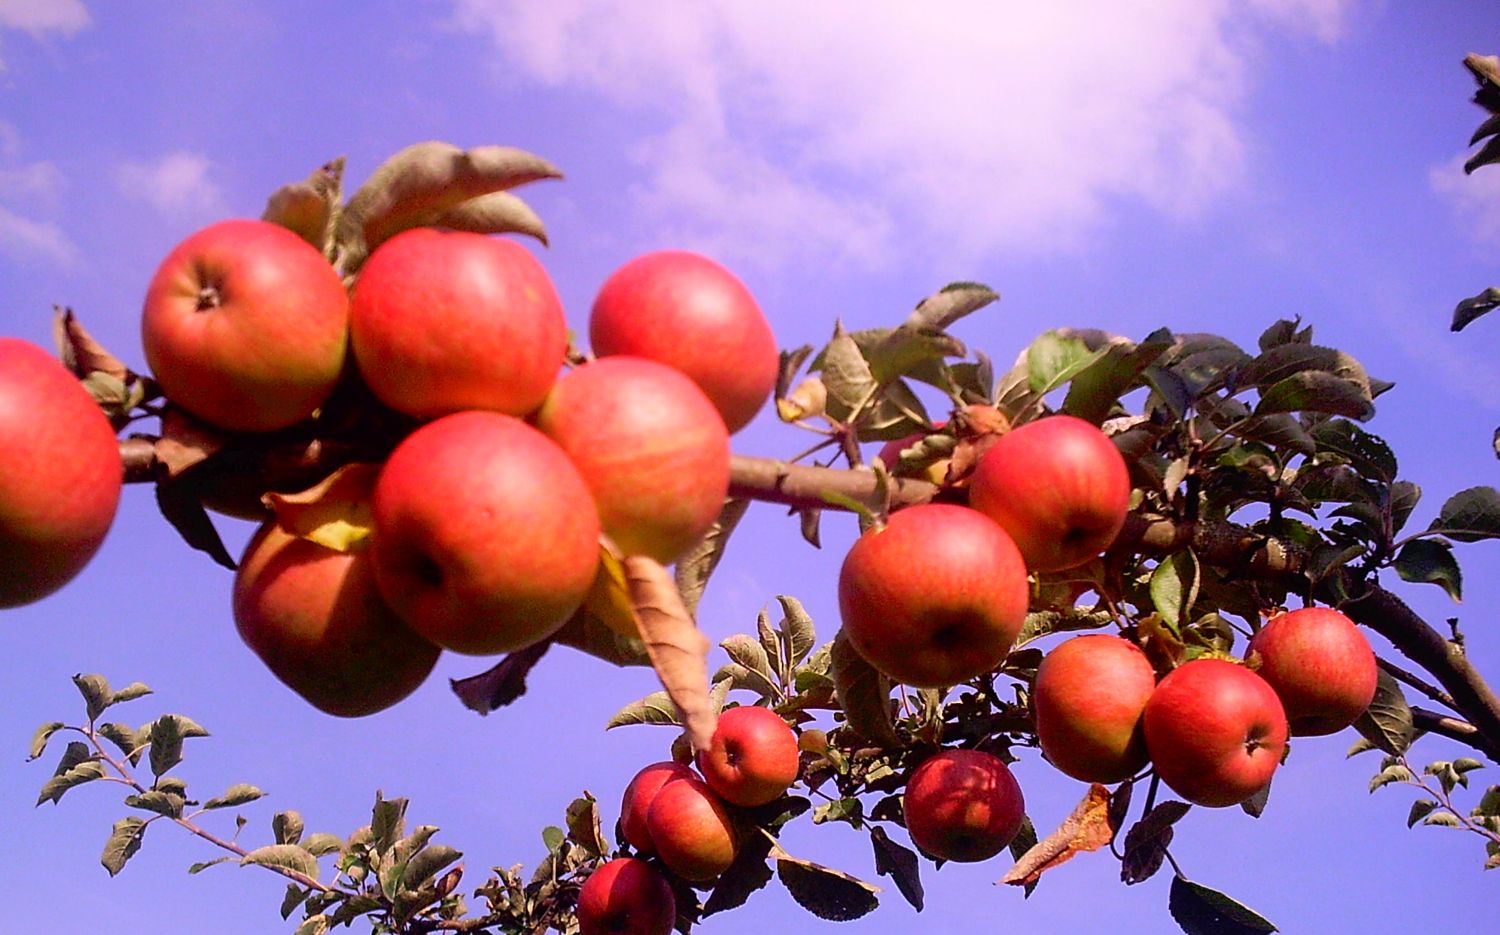 Zu sehen sind viele rote Äpfel am Baum, die in den blauen Himmel ragen.